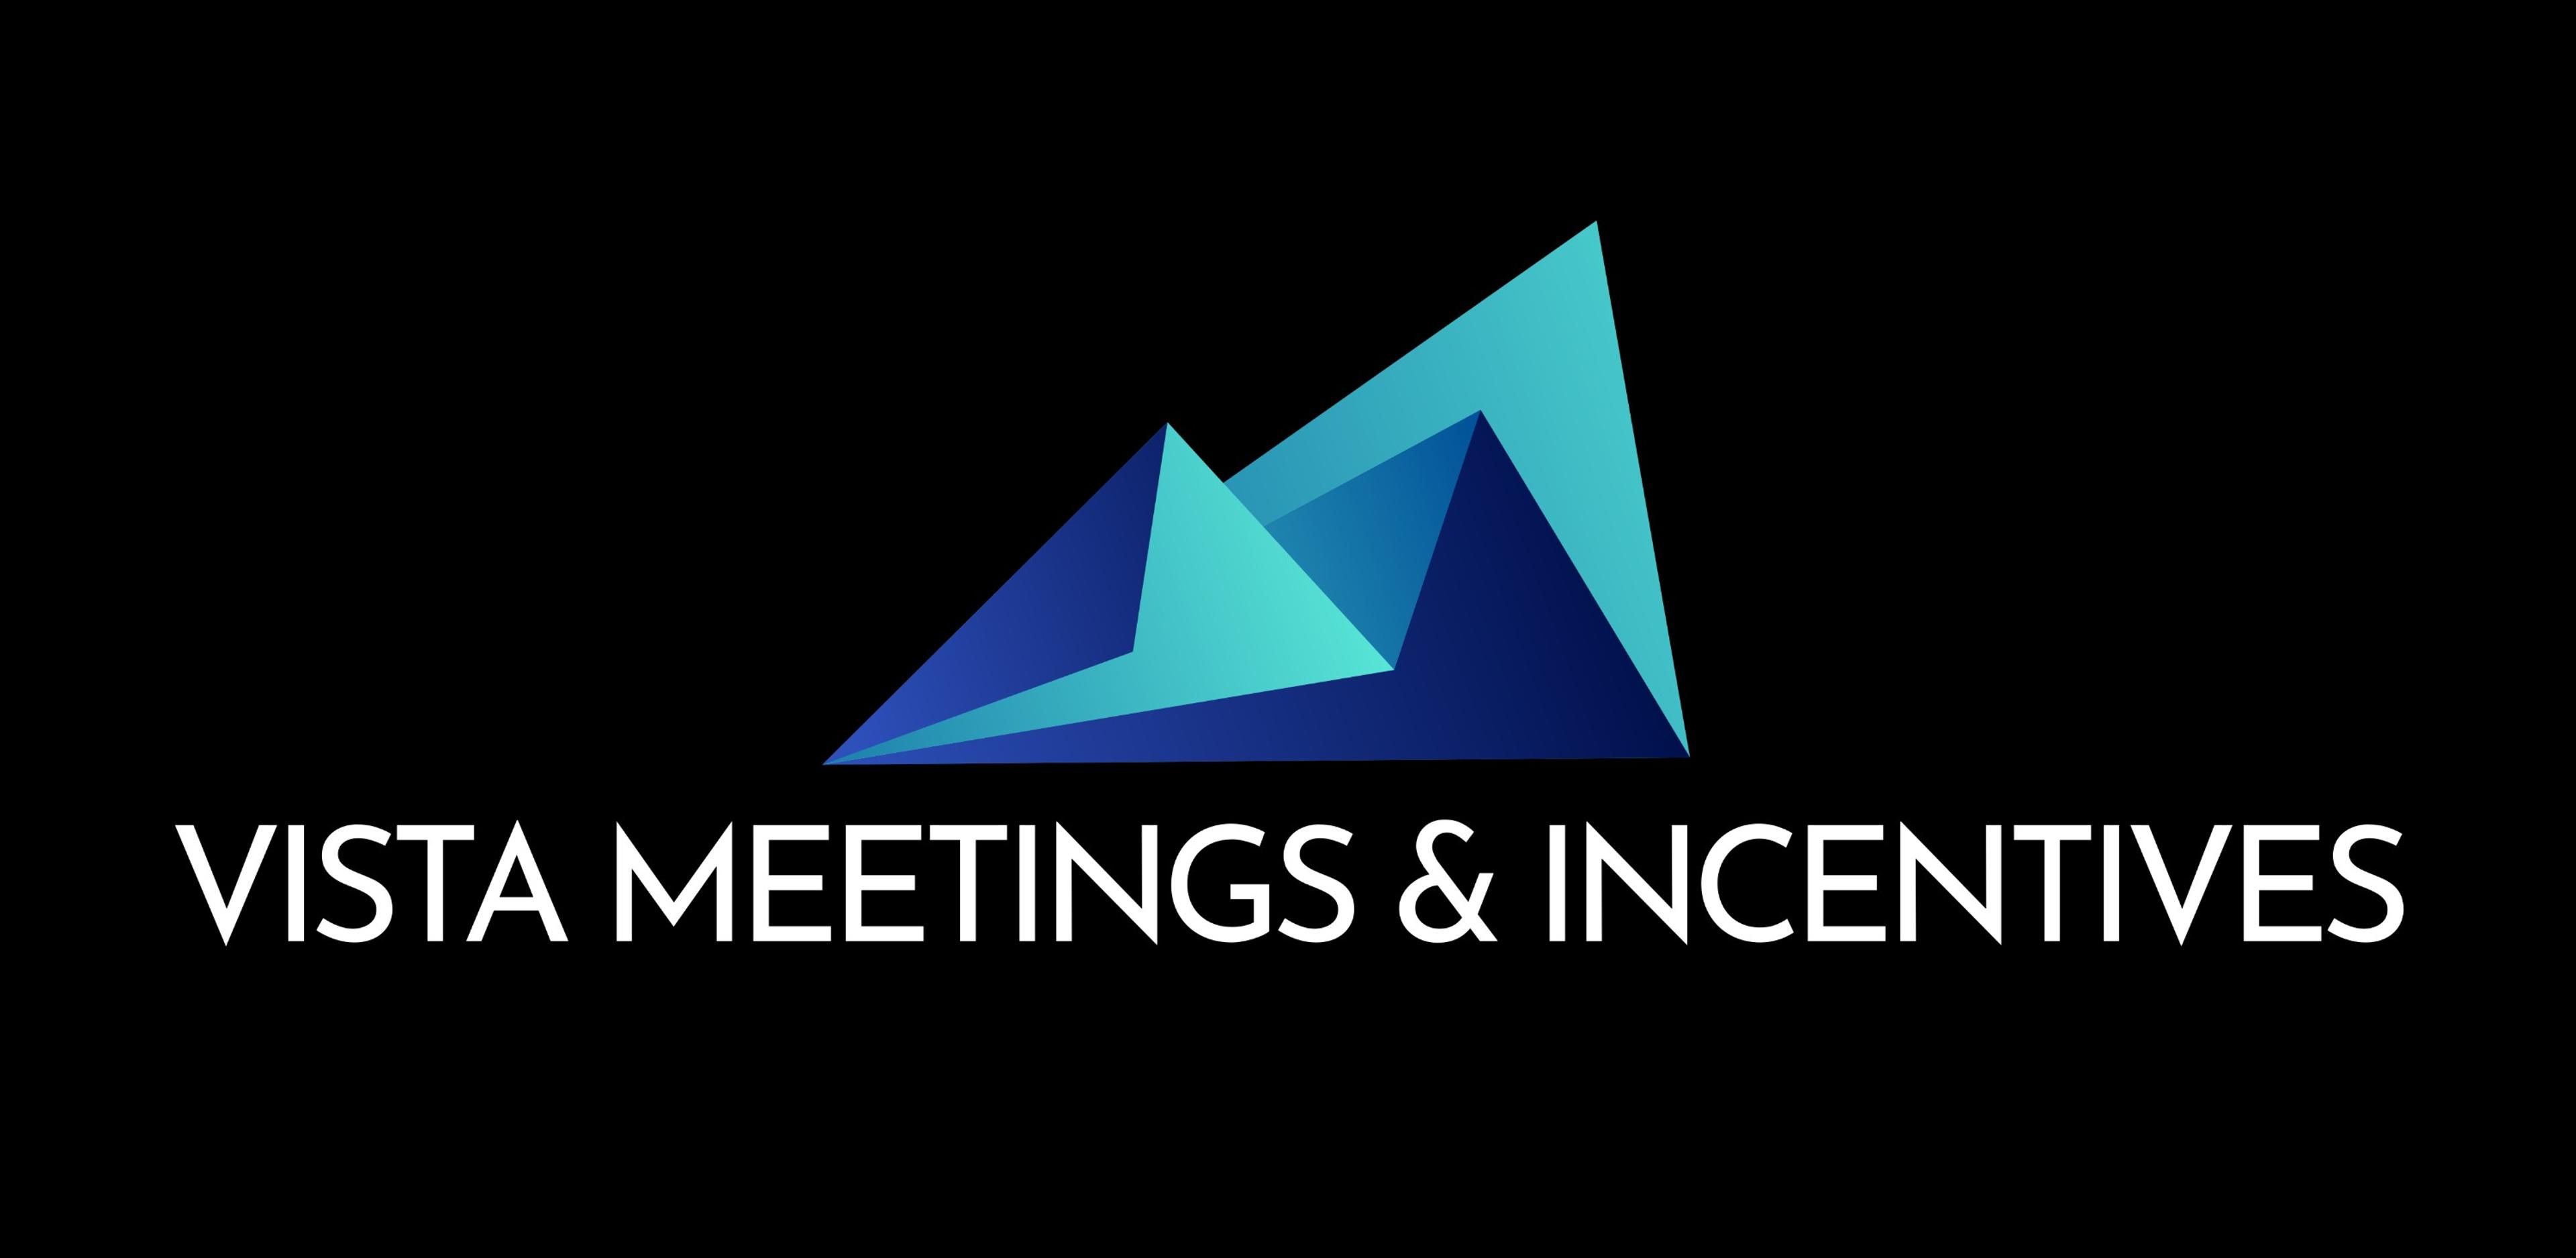 Vista Meetings & Incentives,LLC